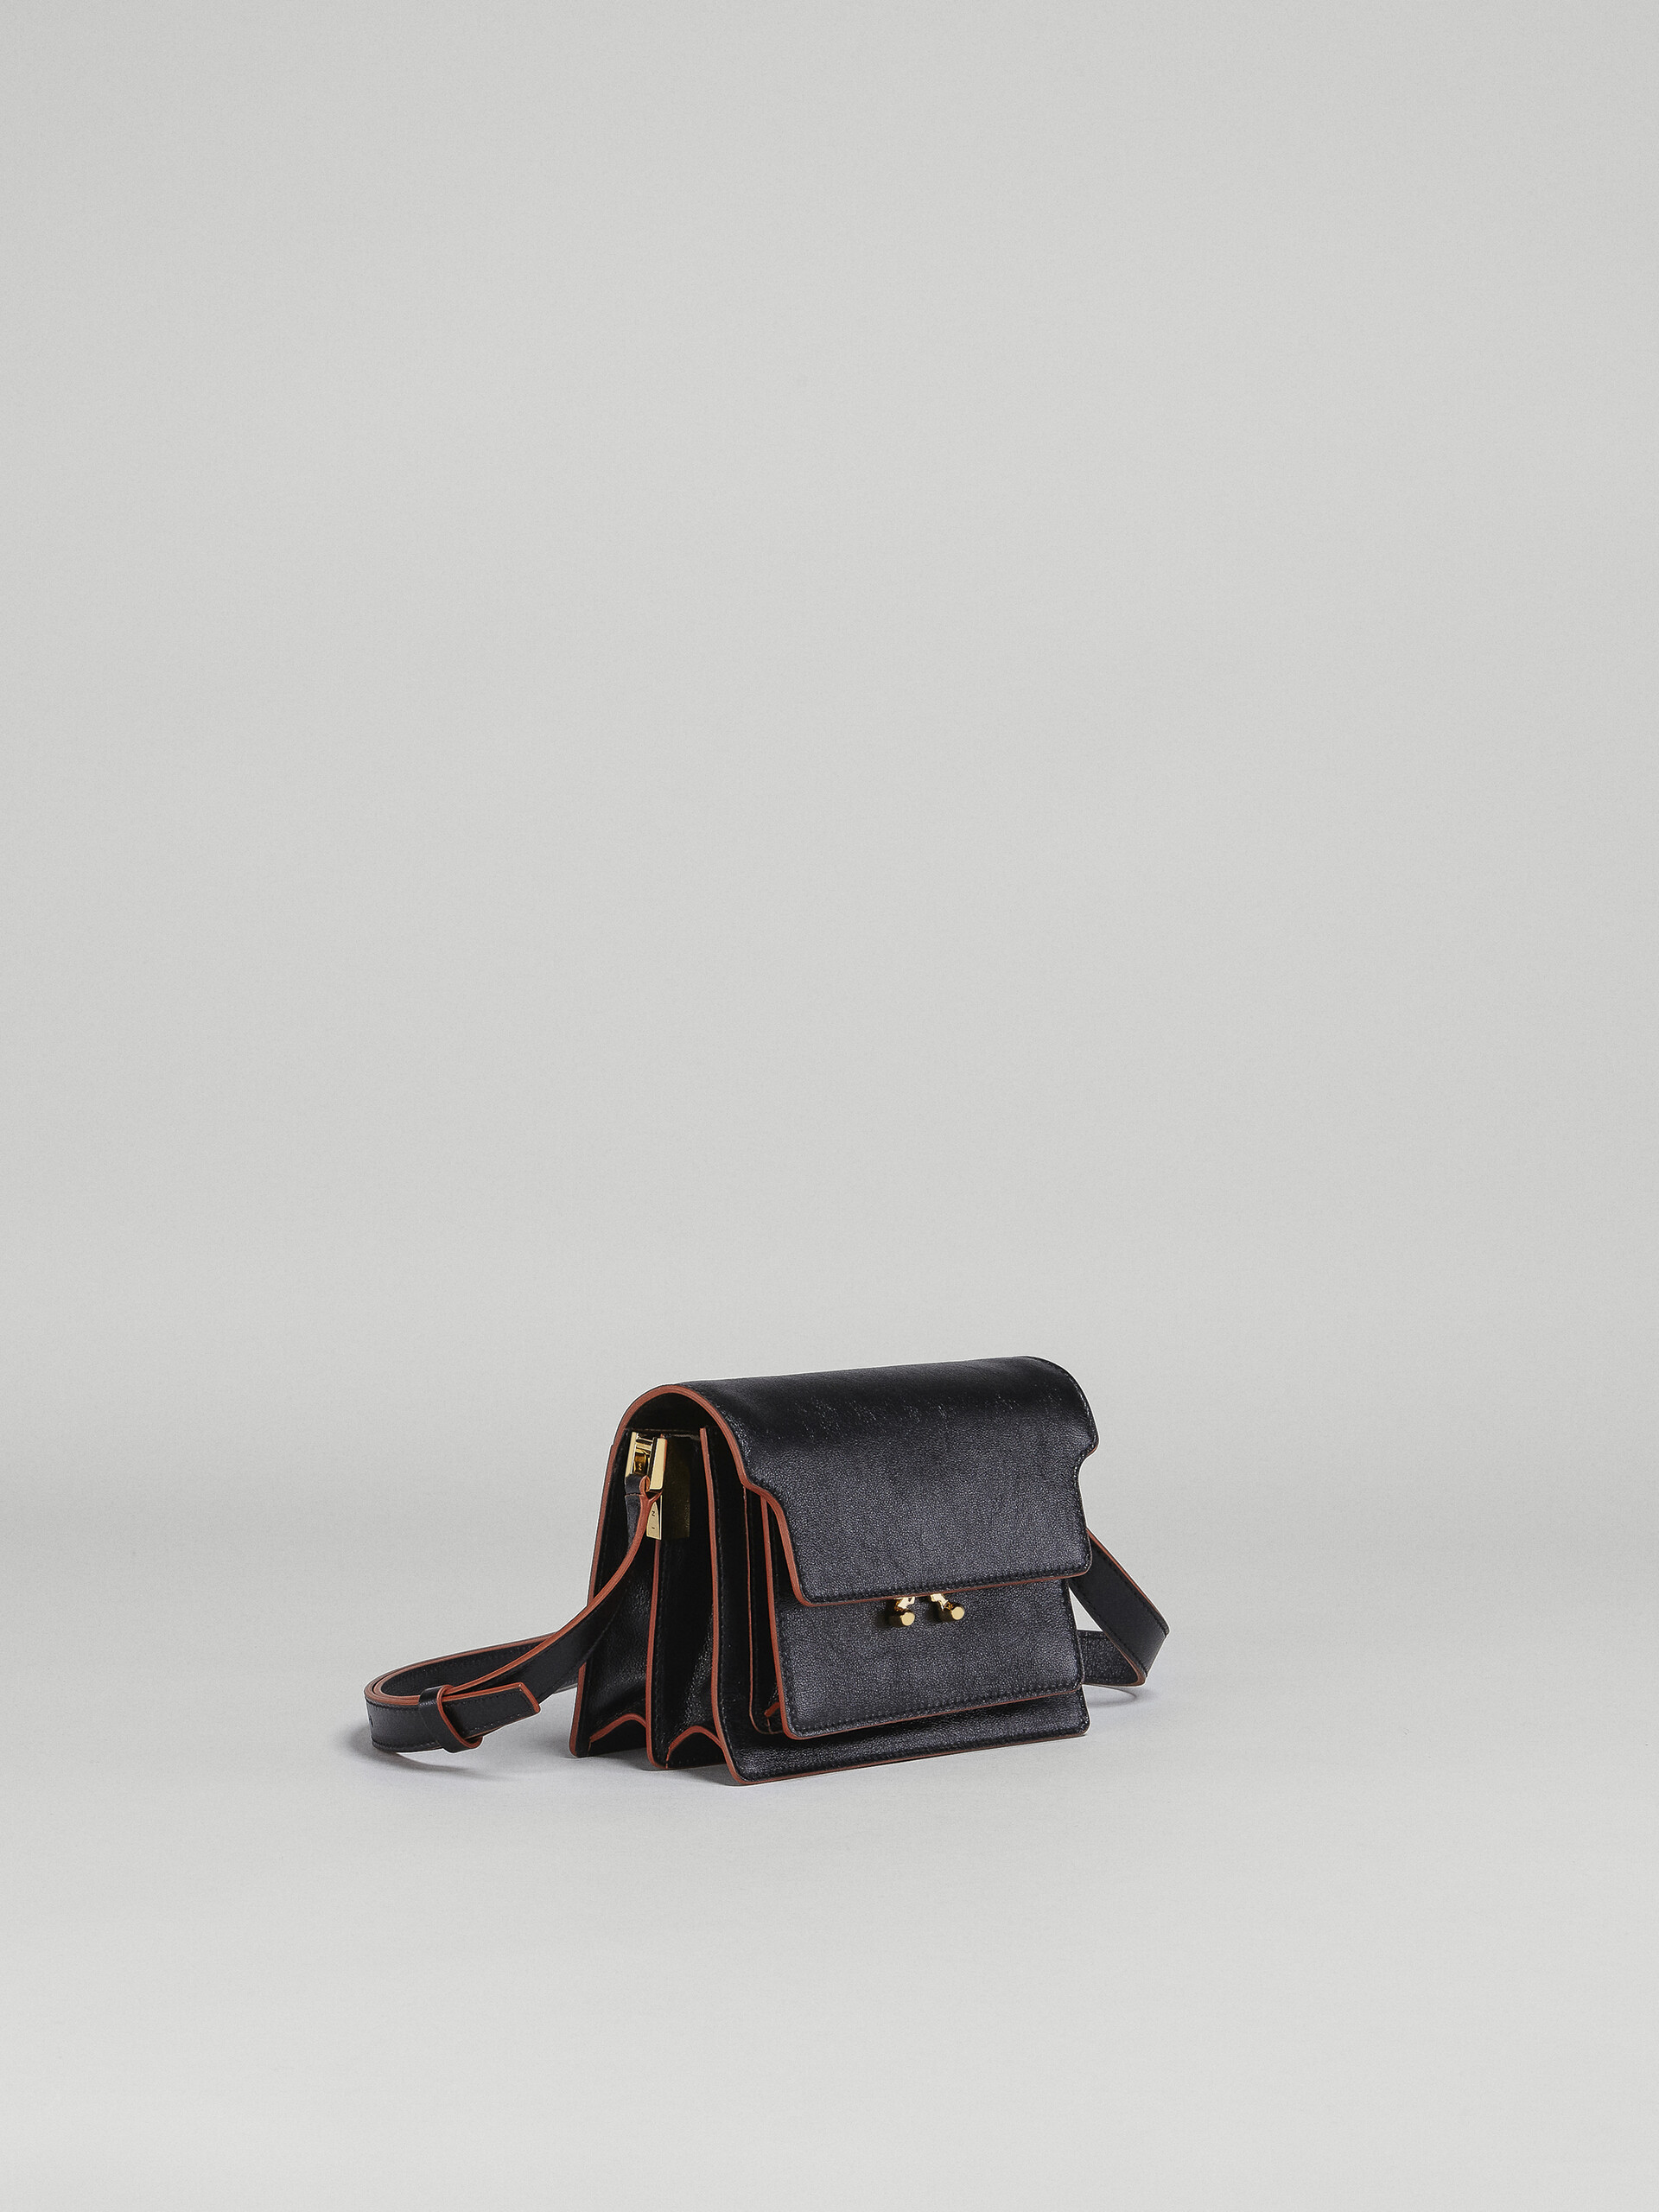 Trunk Soft Mini Bag in black leather - Shoulder Bag - Image 6